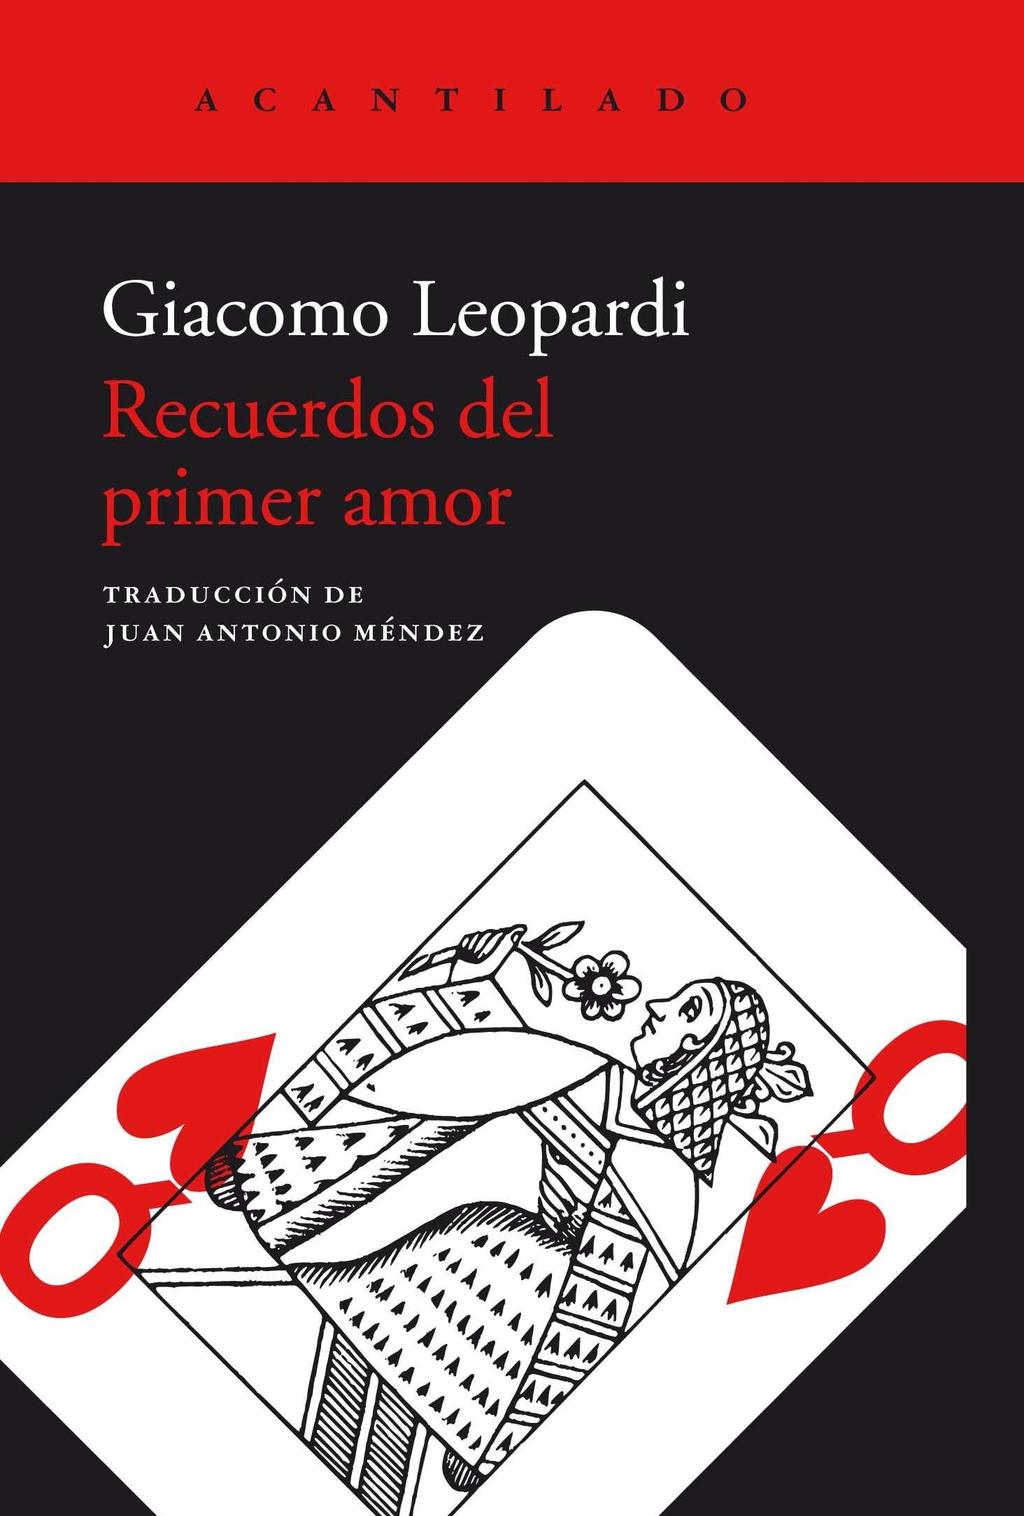 GIACOMO LEOPARDI RECUERDOS DEL PRIMER AMOR En diciembre de 1817 Leopardi conoció a Geltrude Cassi Lazzari, prima de su padre, por quien profesó un amor secreto.